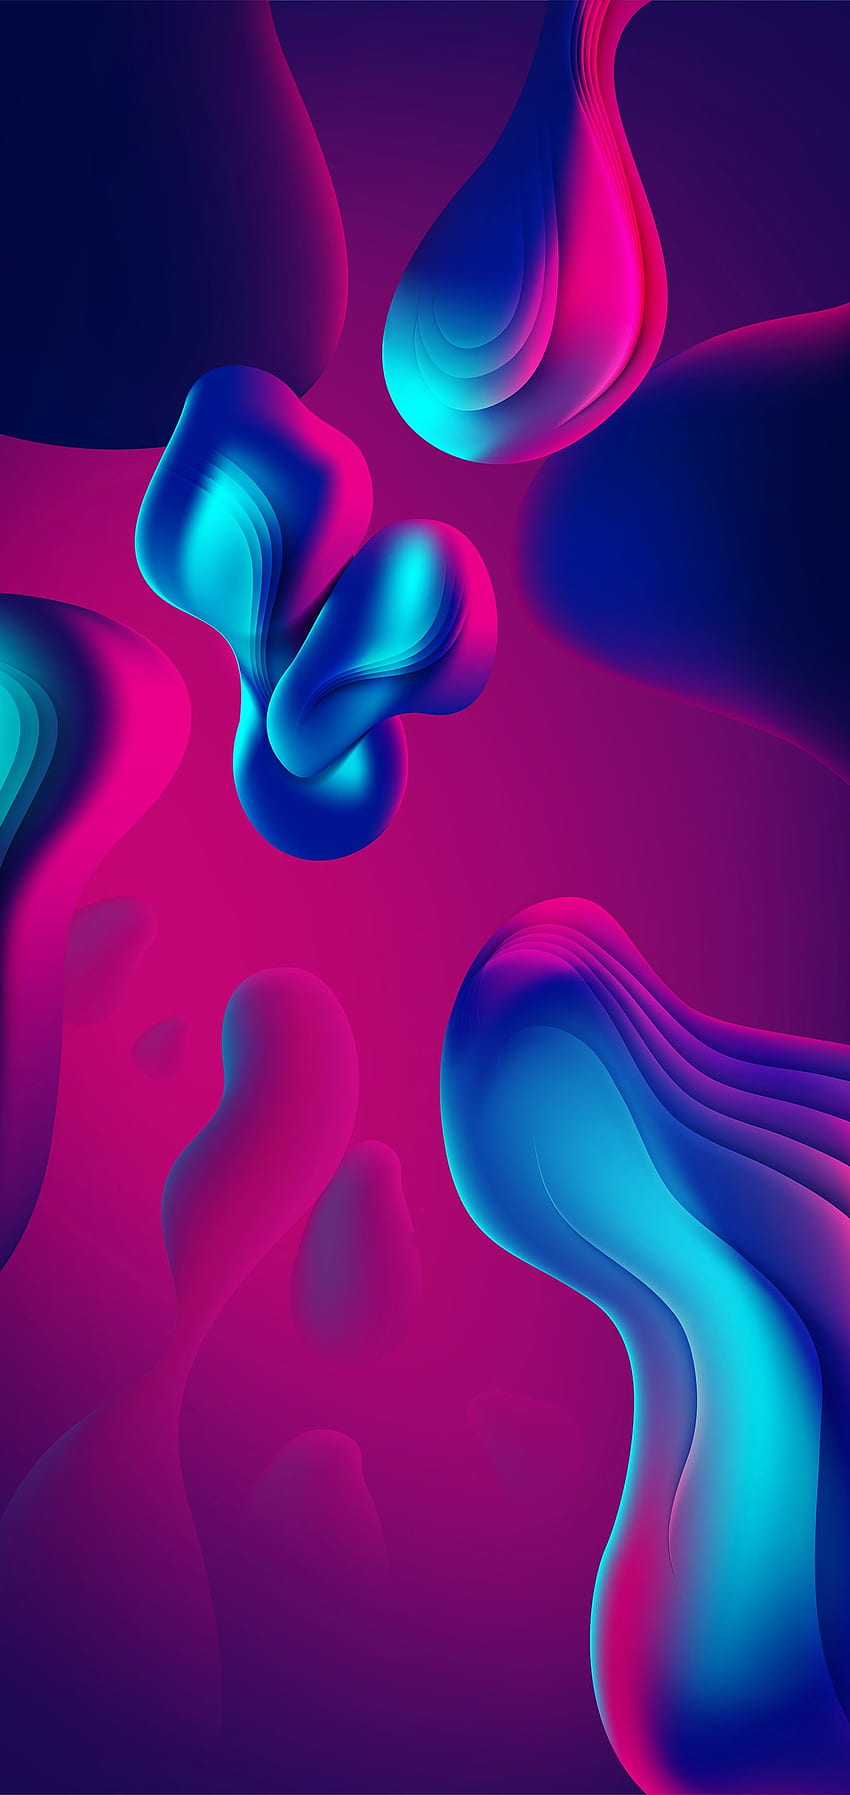 iphone abstracto, azul, morado, rosa, colorido, luz, azul eléctrico, magenta, agua, violeta, arte fractal fondo de pantalla del teléfono